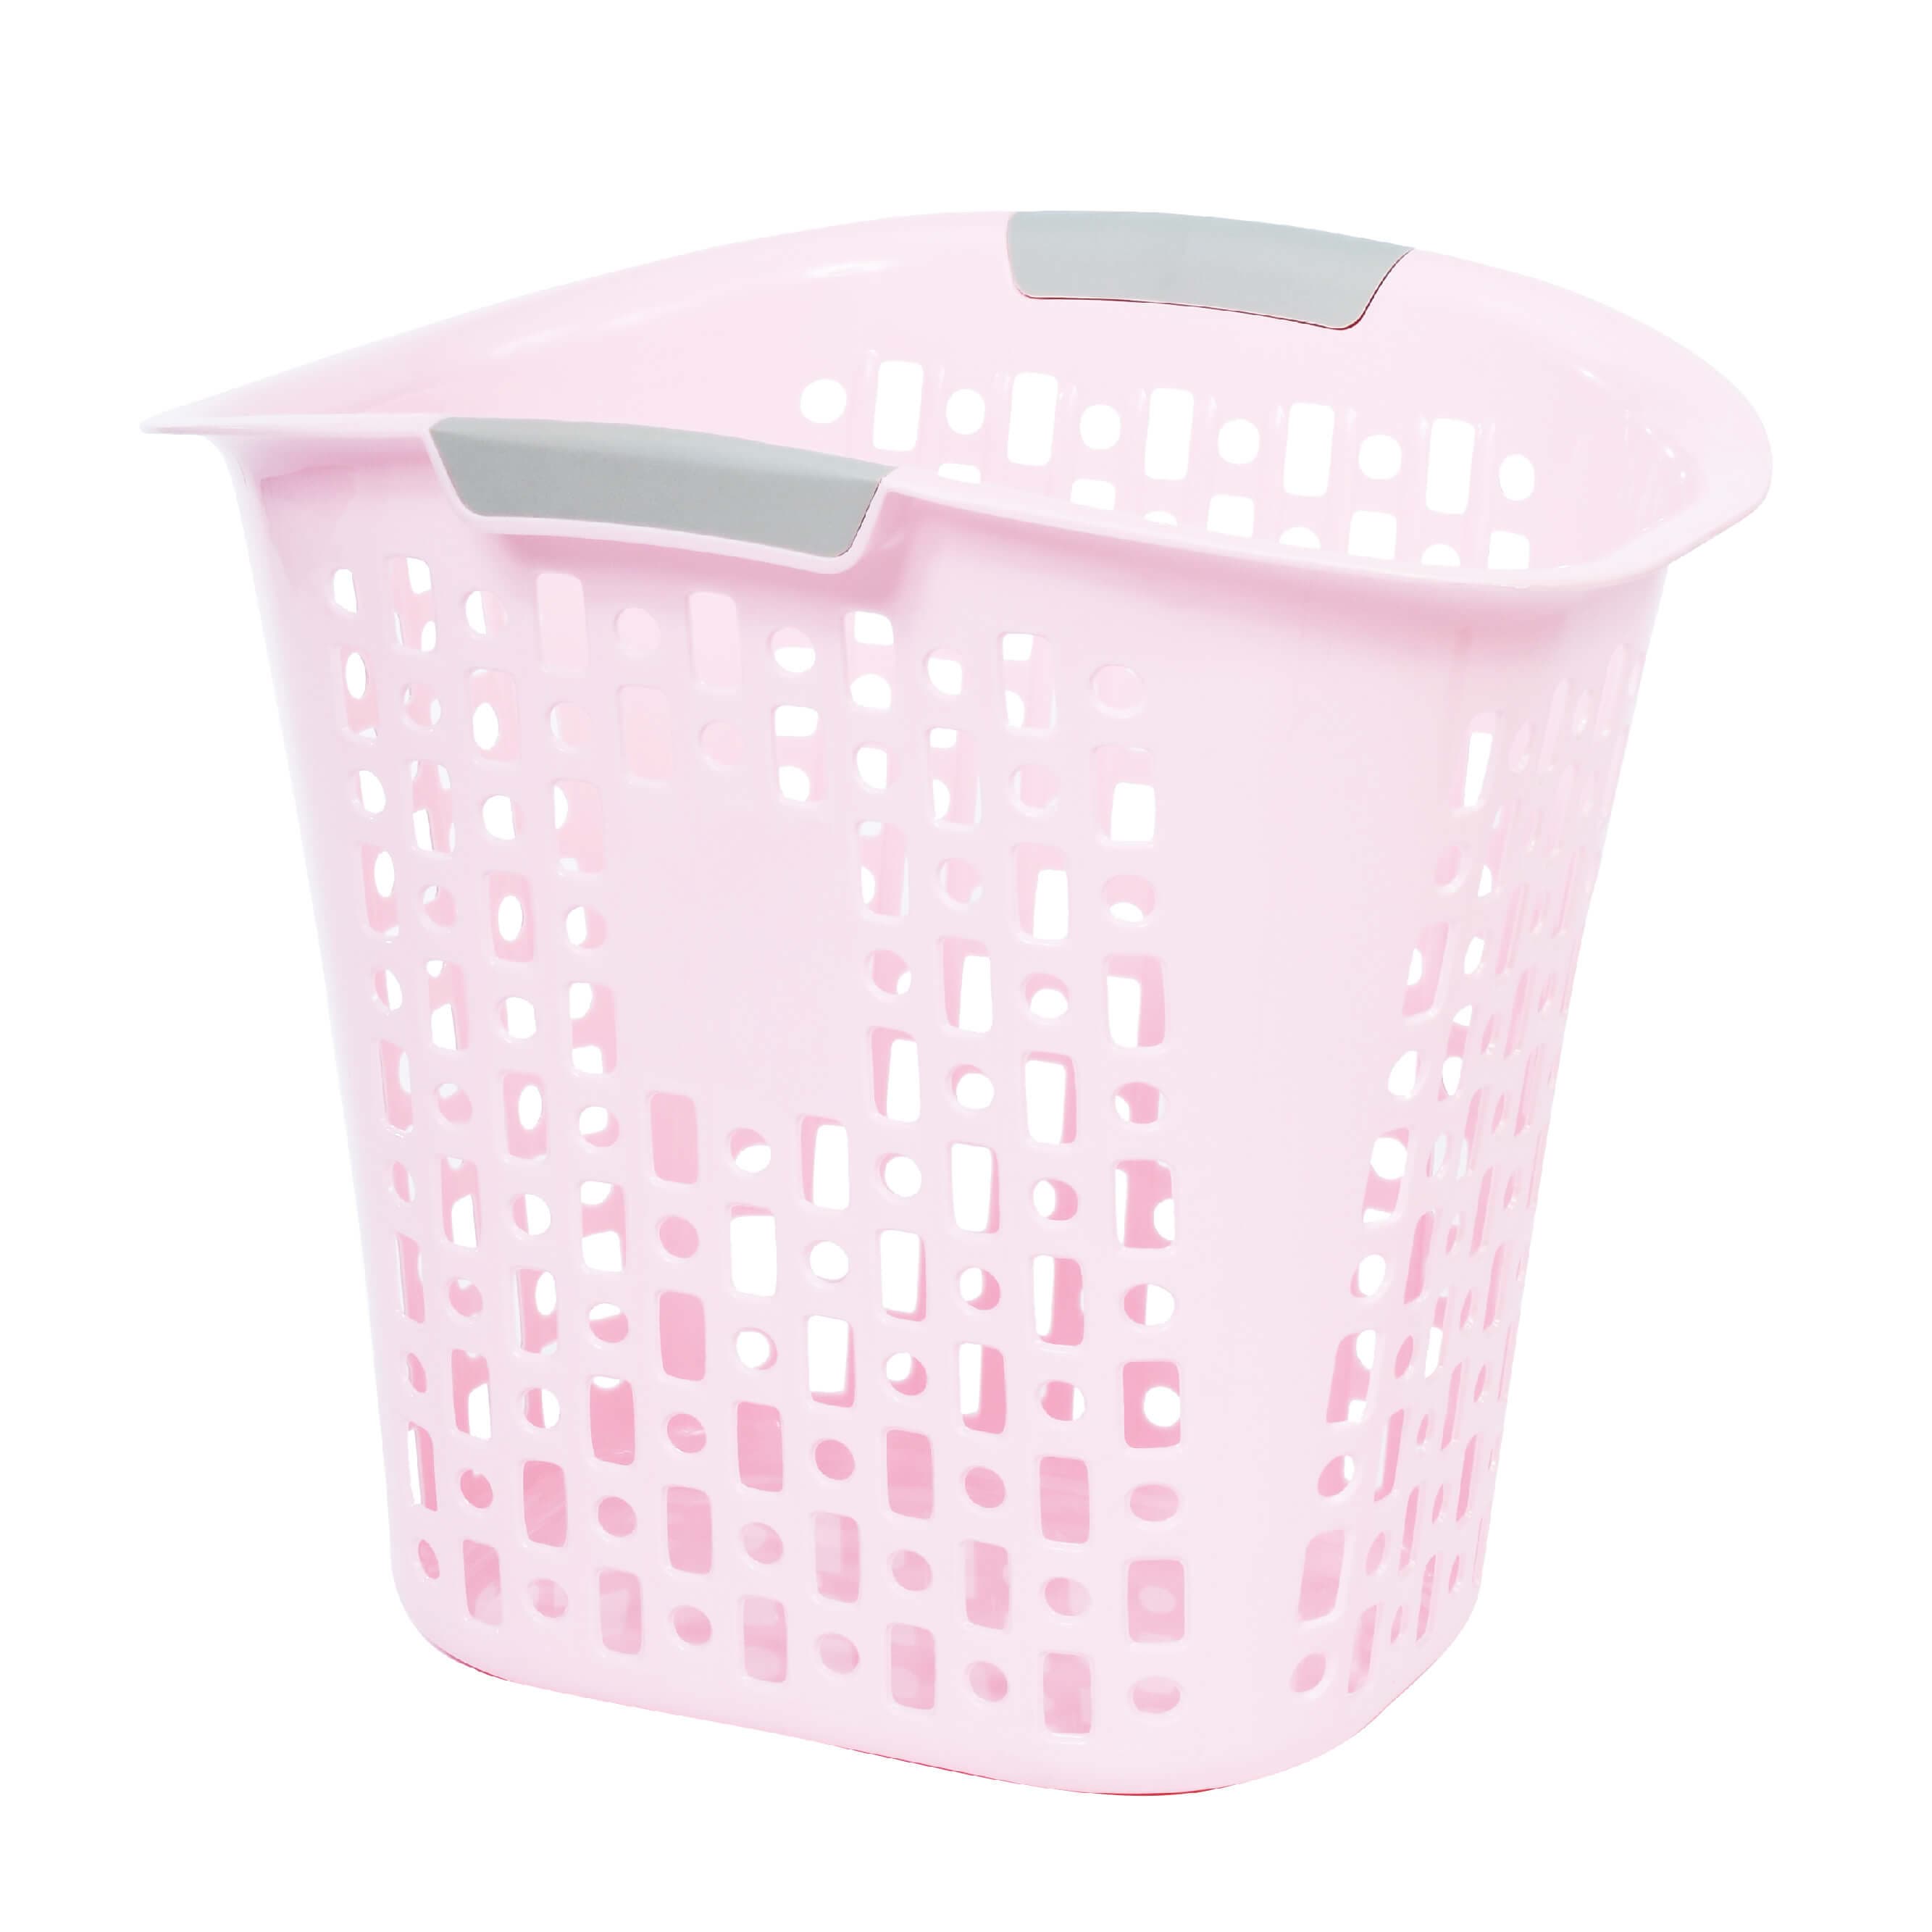 Household _ Laundry Basket _ Large Basket I1024